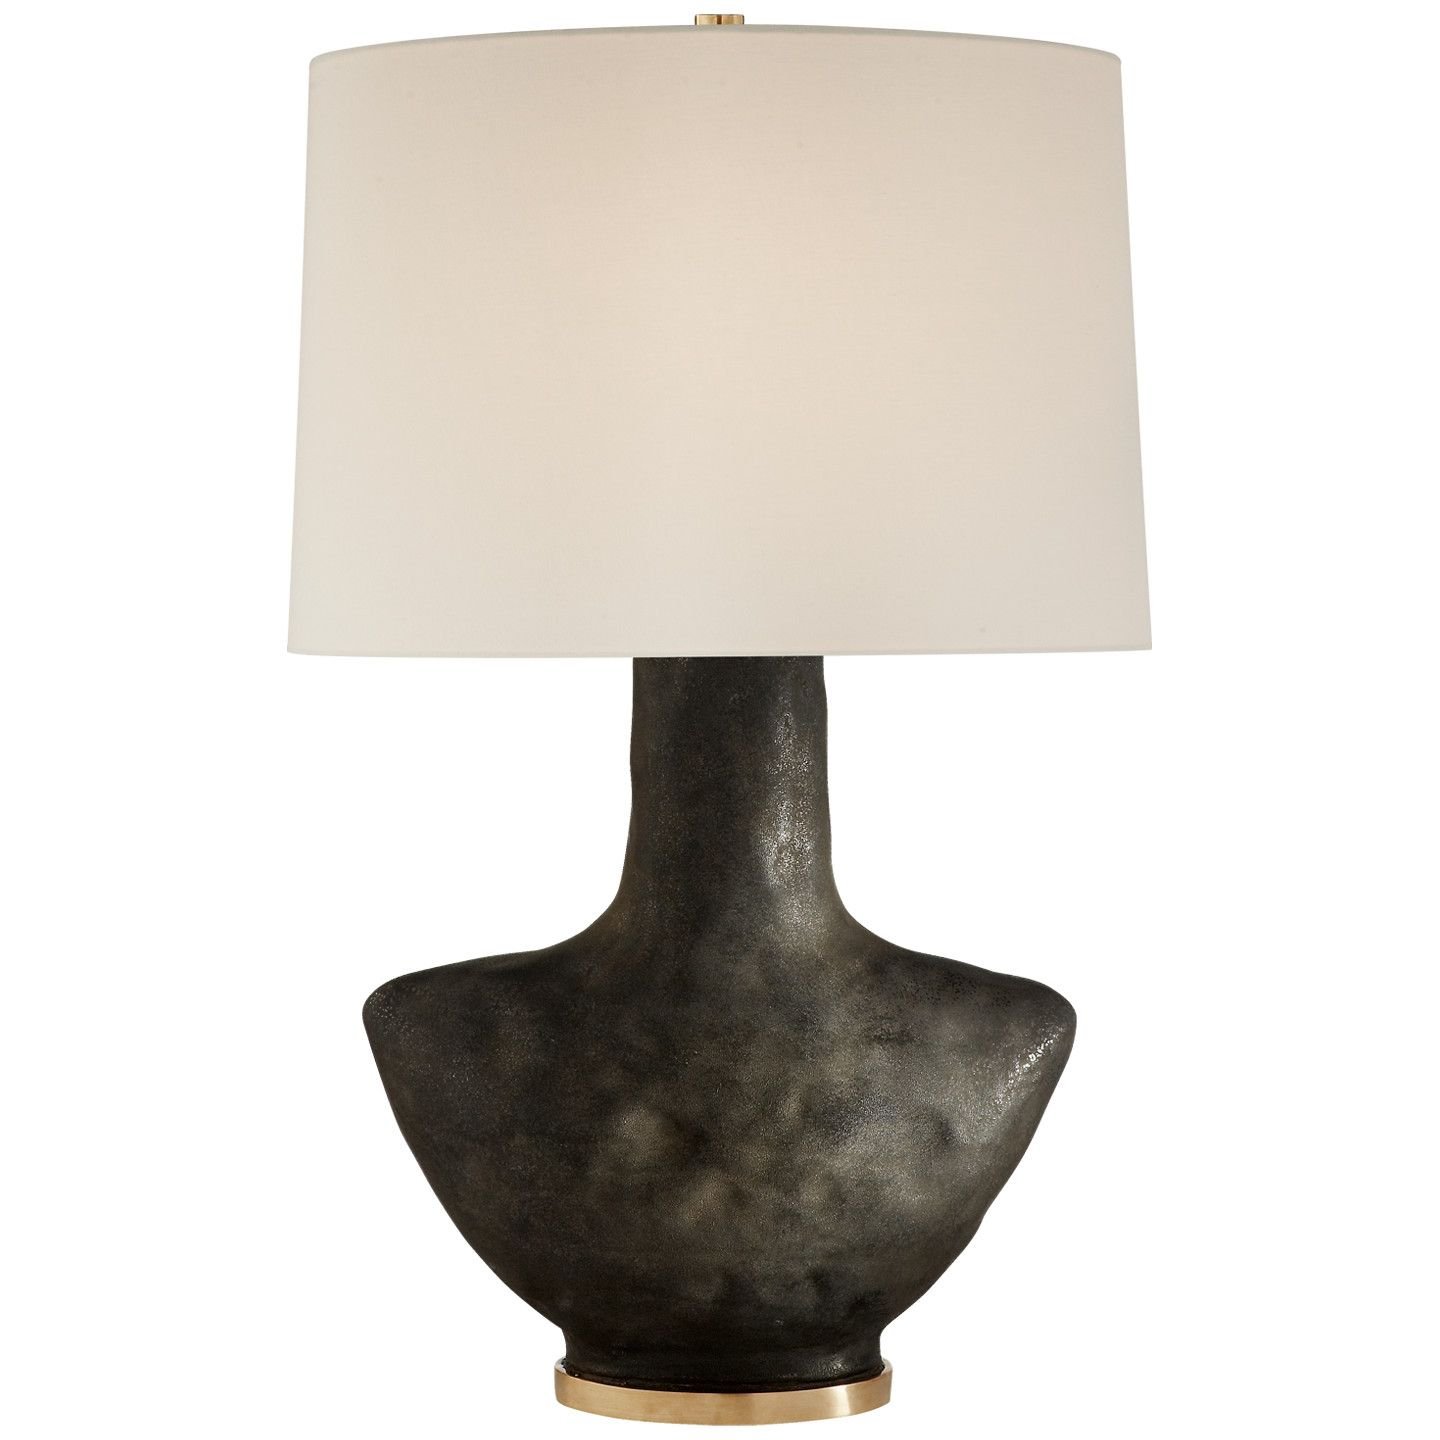 Armato Table Lamp Black/Linen